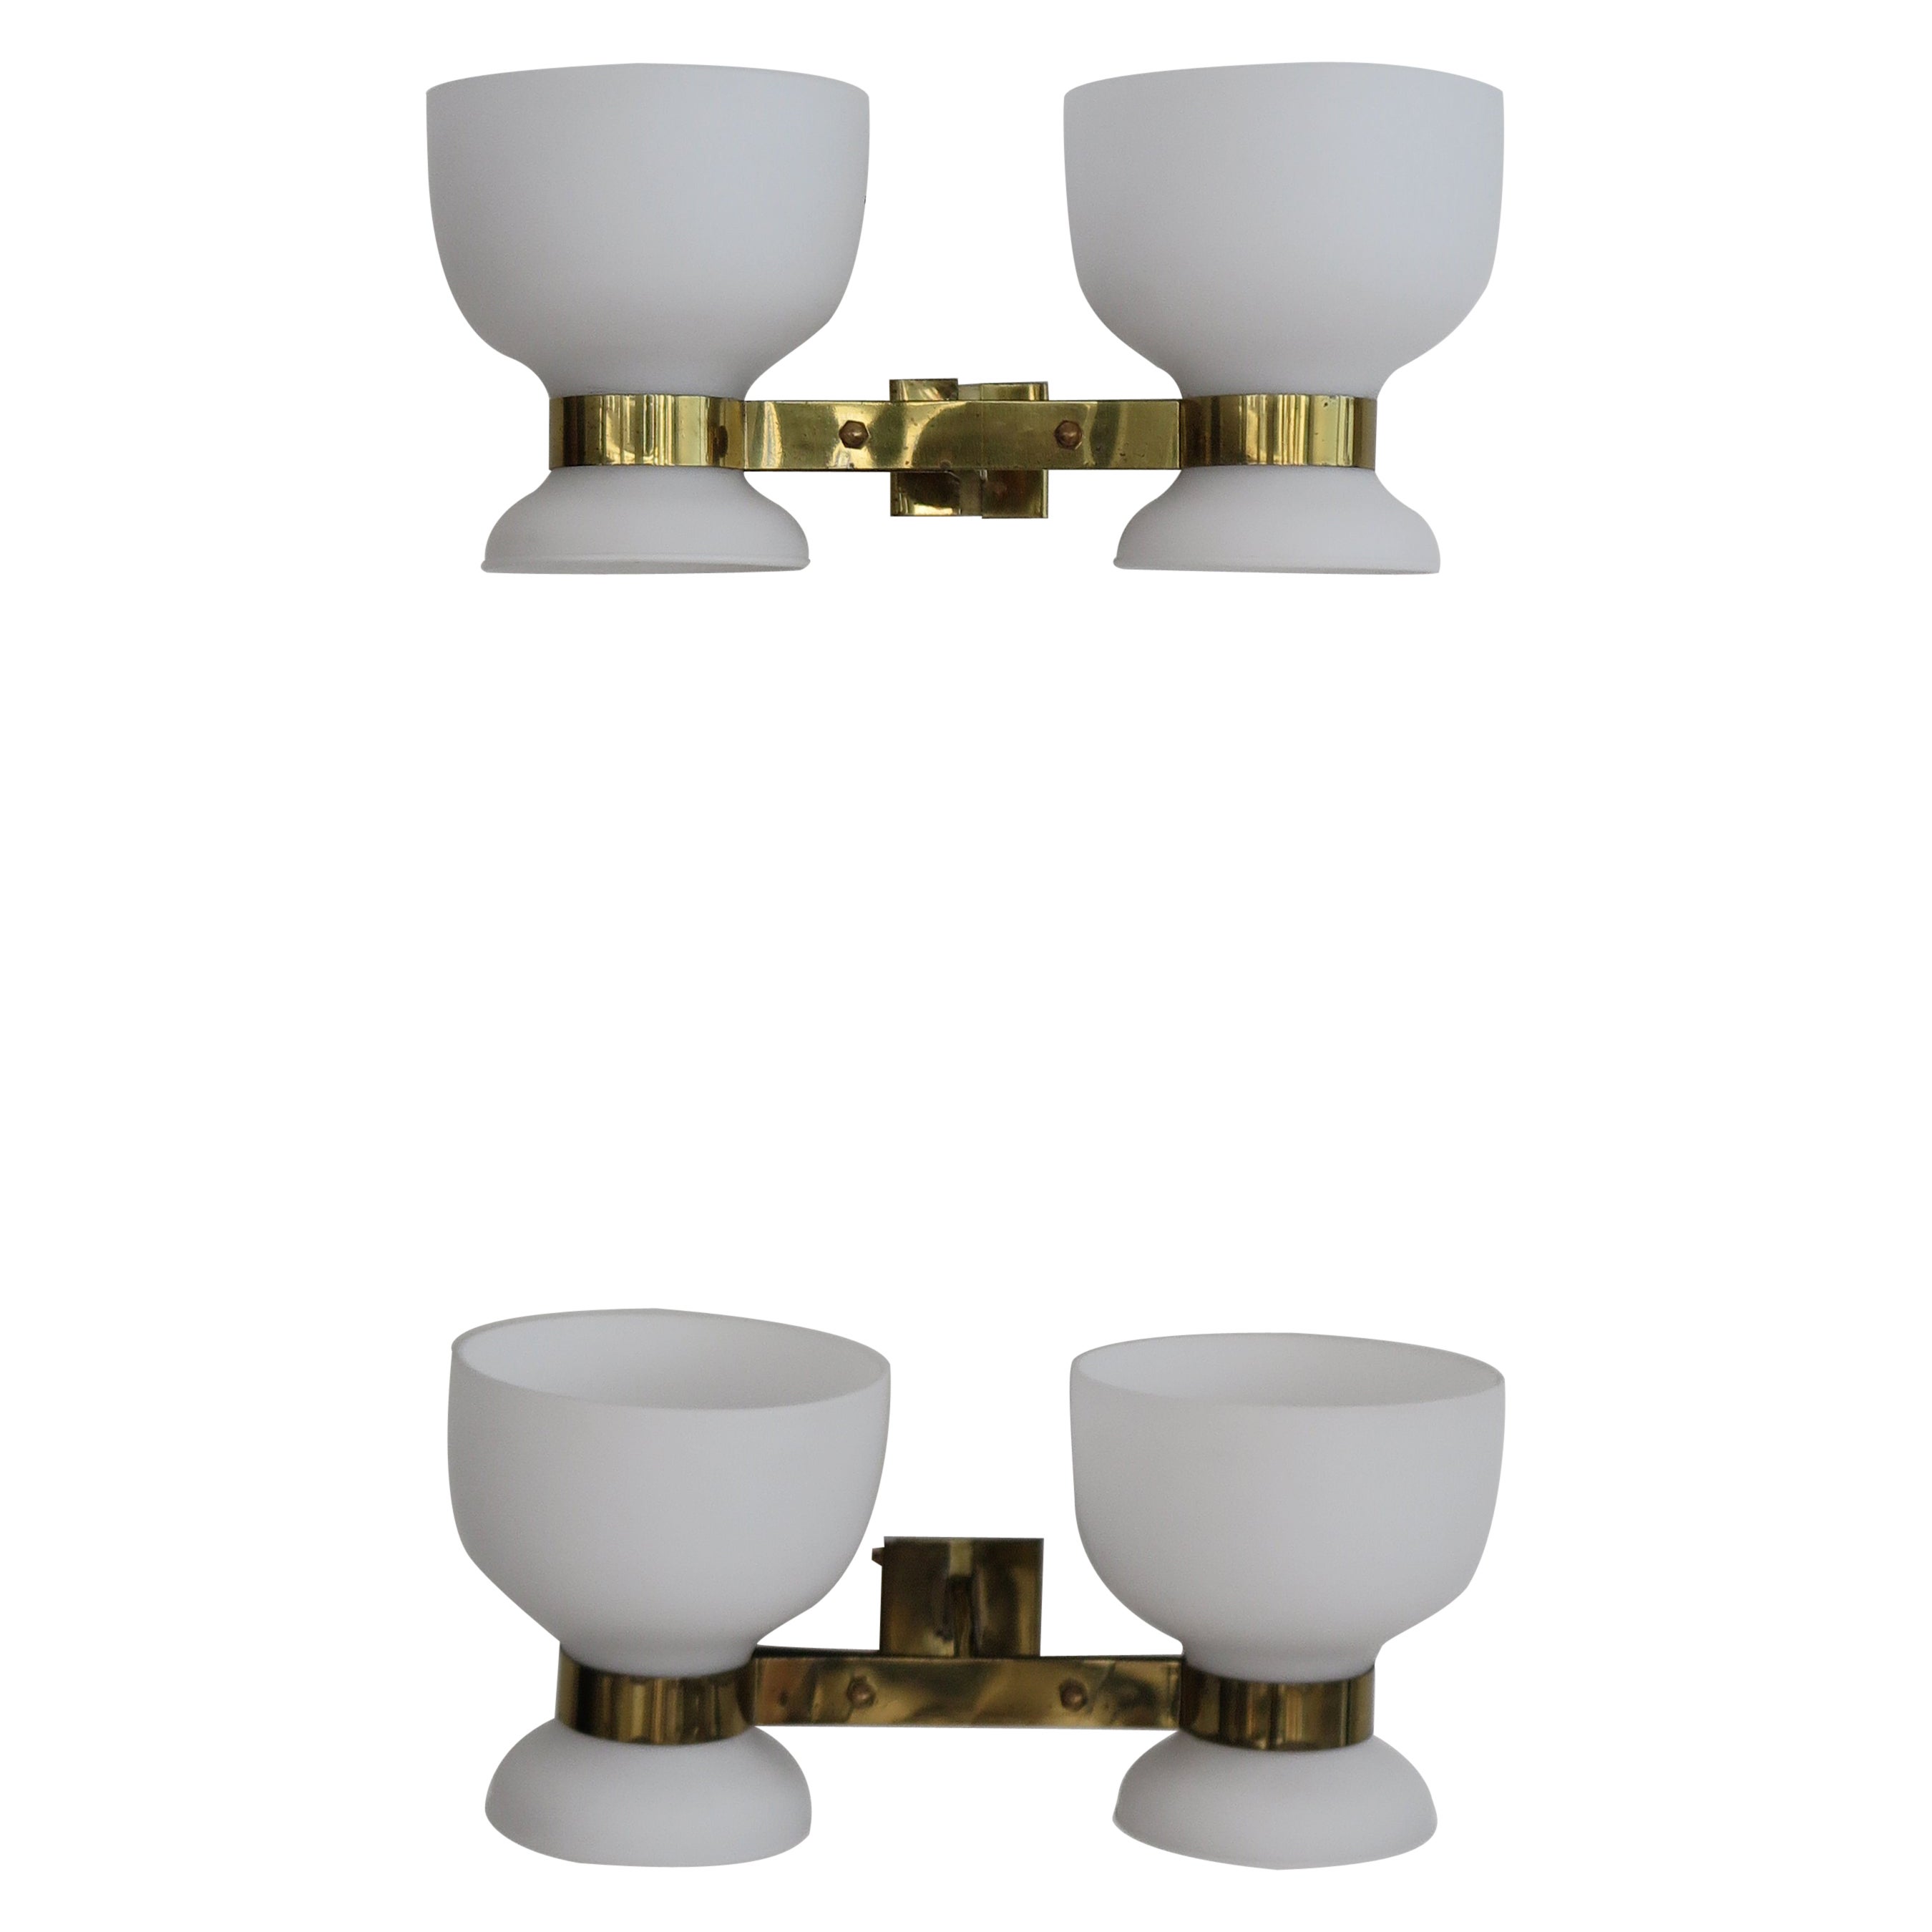 Stilnovo Italian Midcentury Modern Design Brass Glass Sconces Wall Lights 1950s For Sale